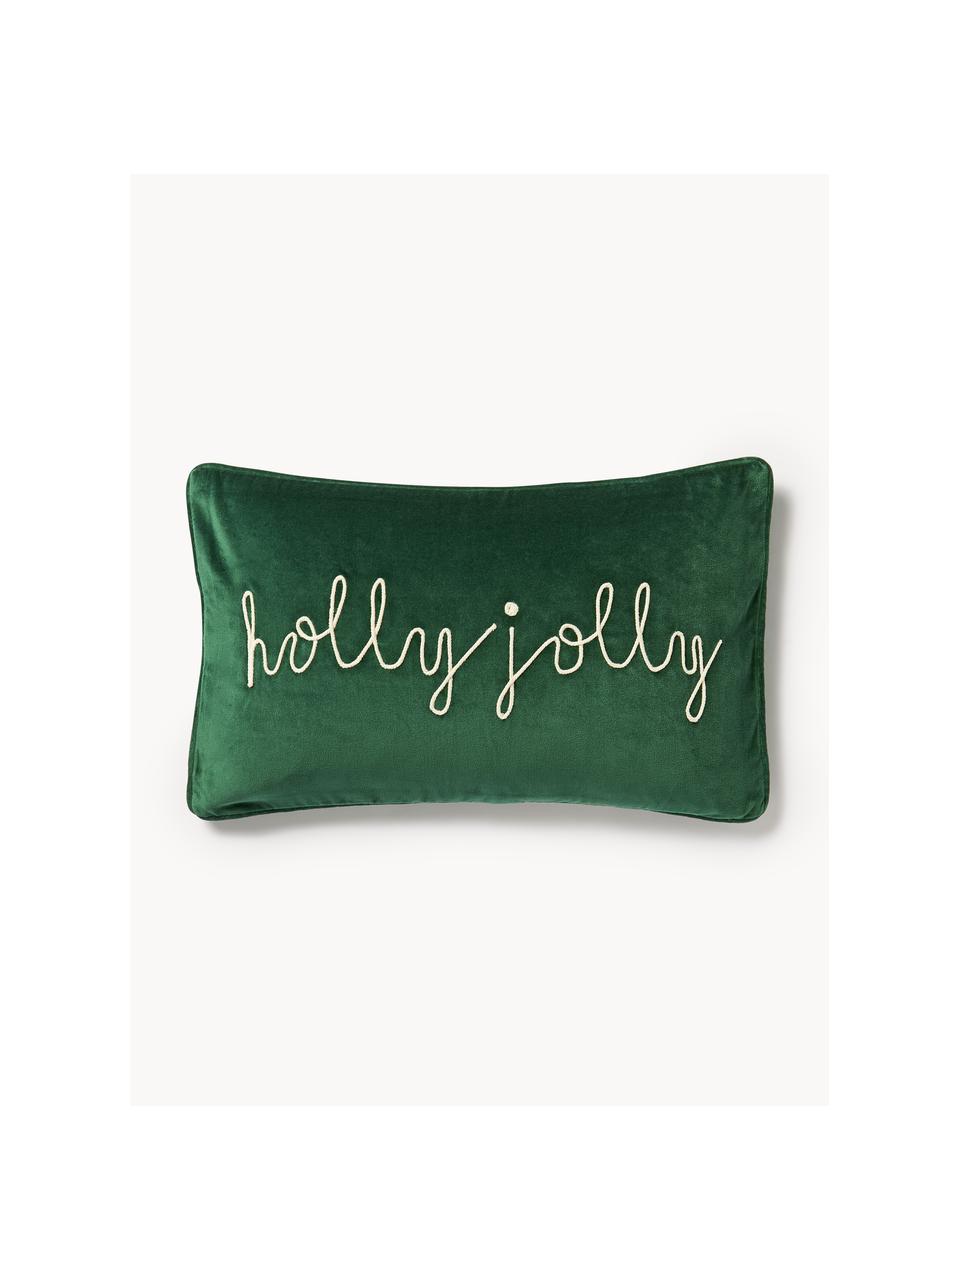 Poszewka na poduszkę z aksamitu z haftem i lamówką Holly Jolly, Aksamit (100% bawełna), Ciemny zielony, S 30 x D 50 cm